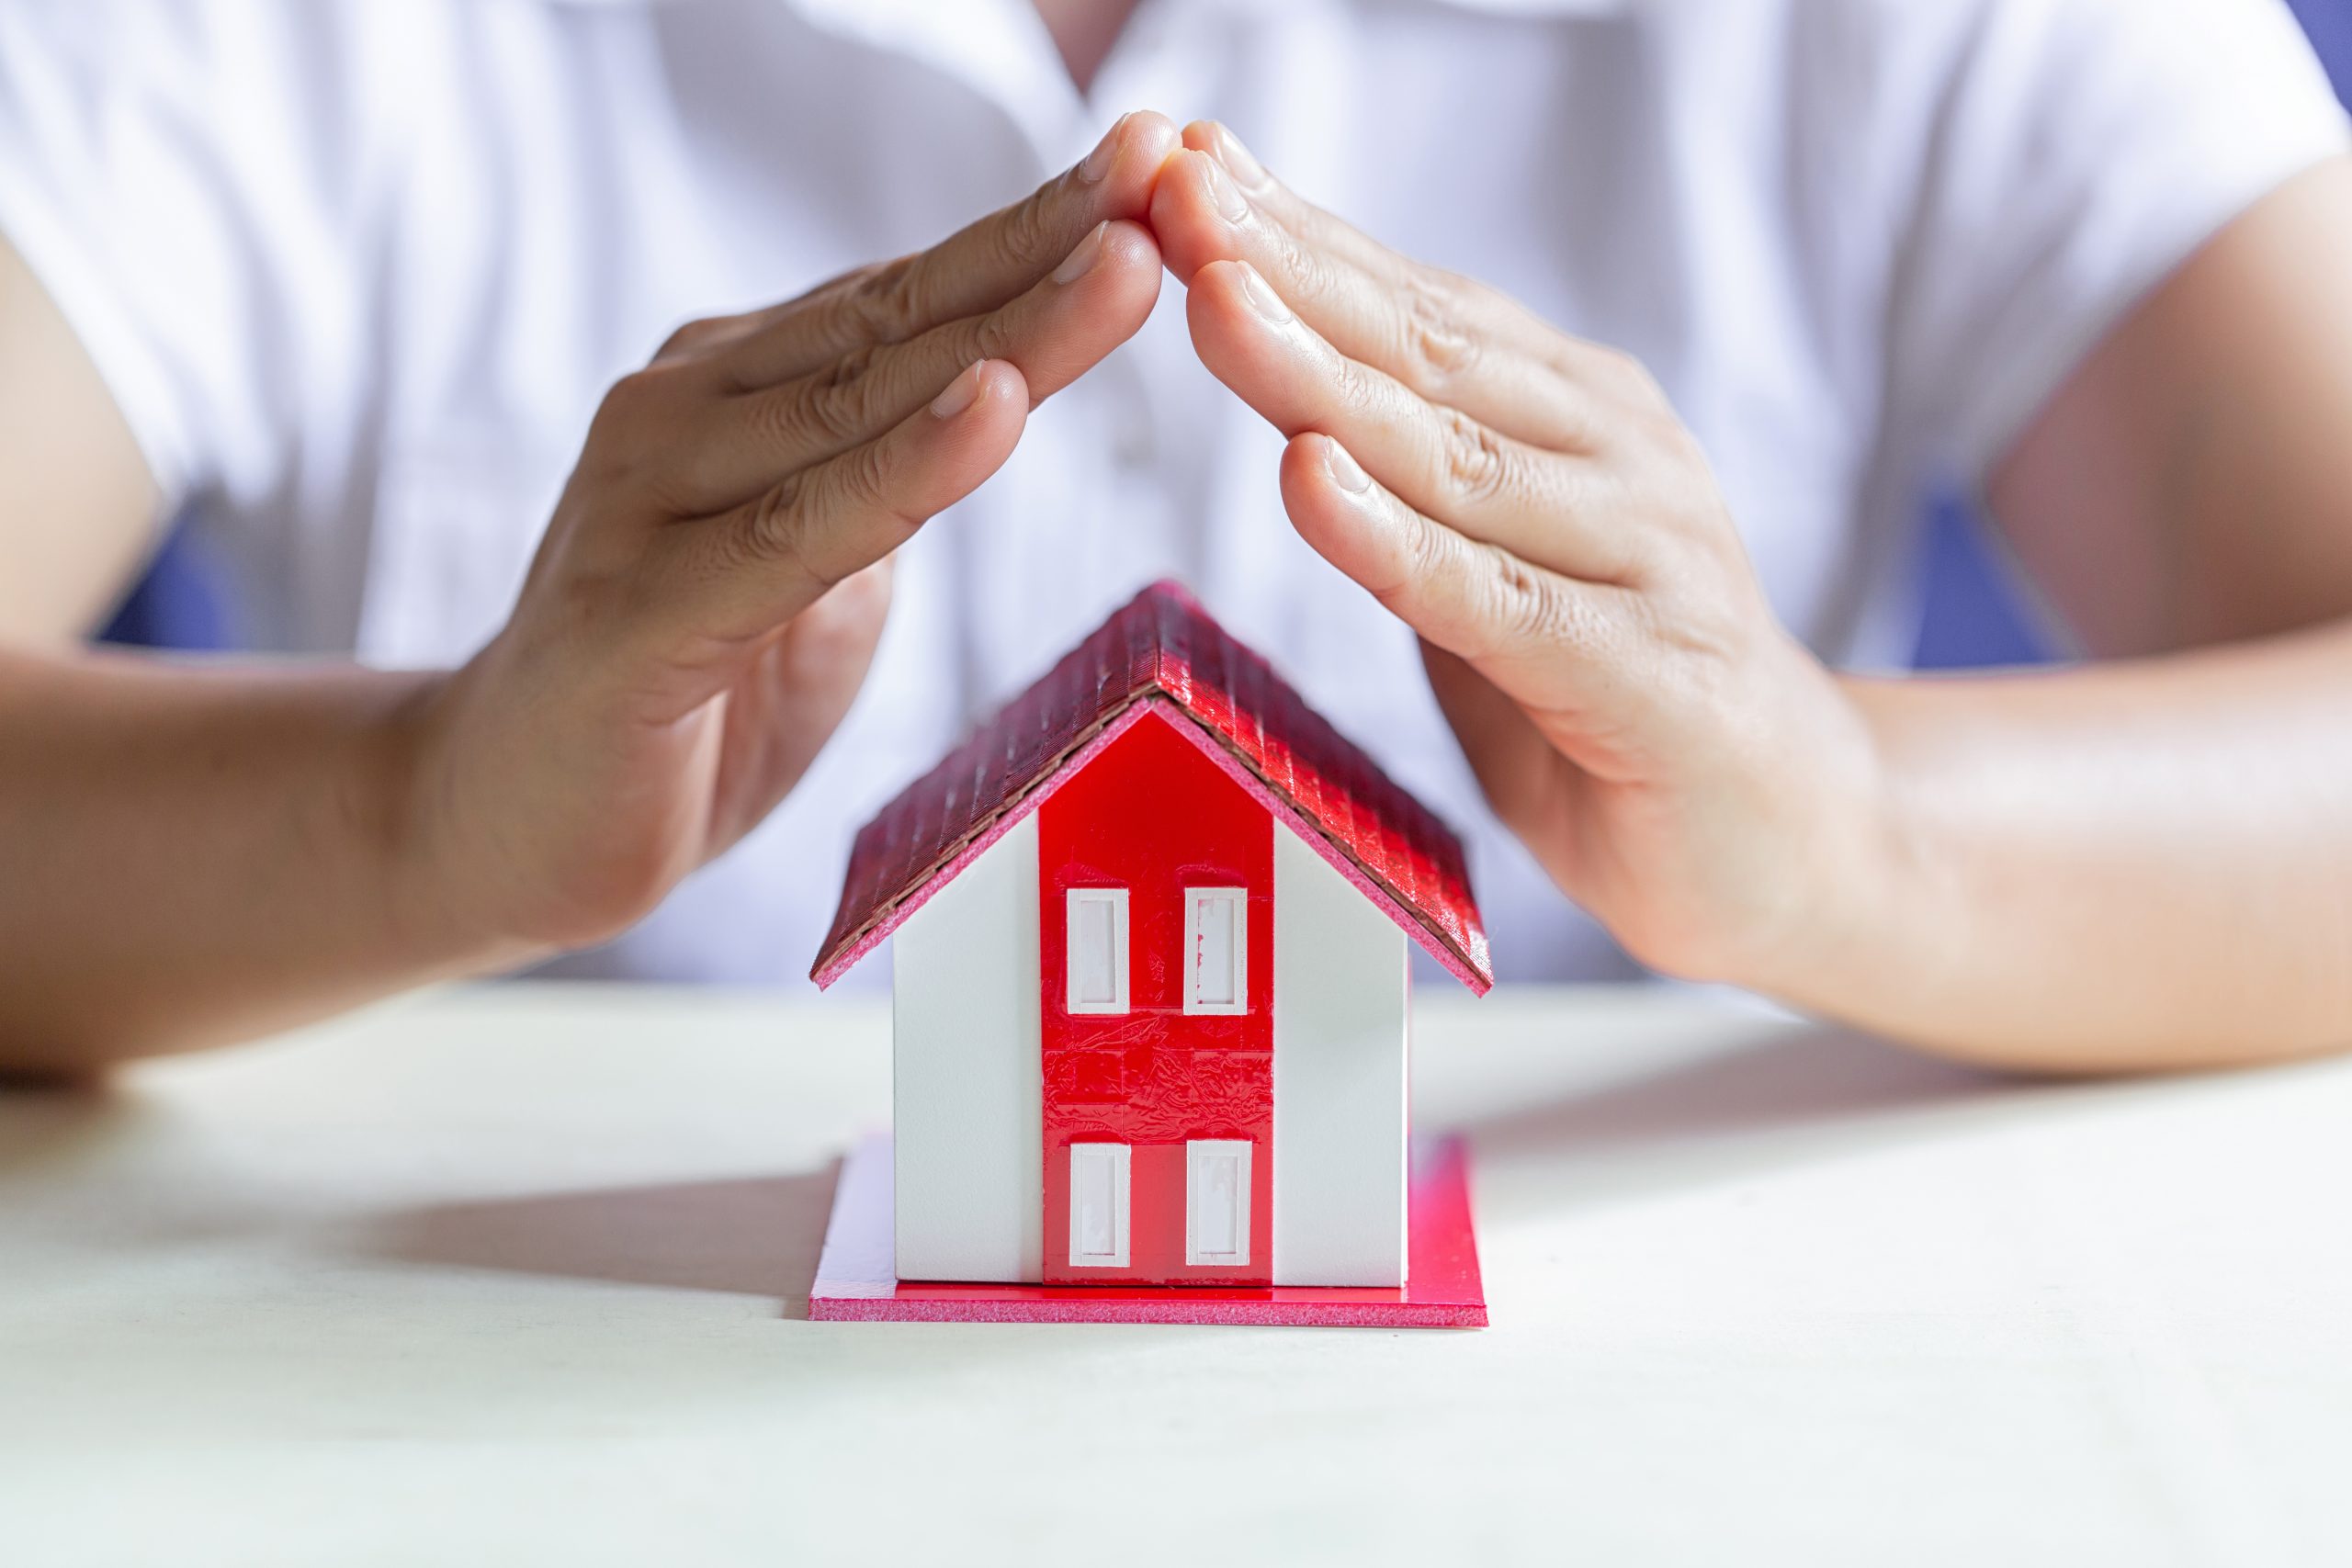 Assurance multirisque habitation : Ce que vous avez besoin de savoir